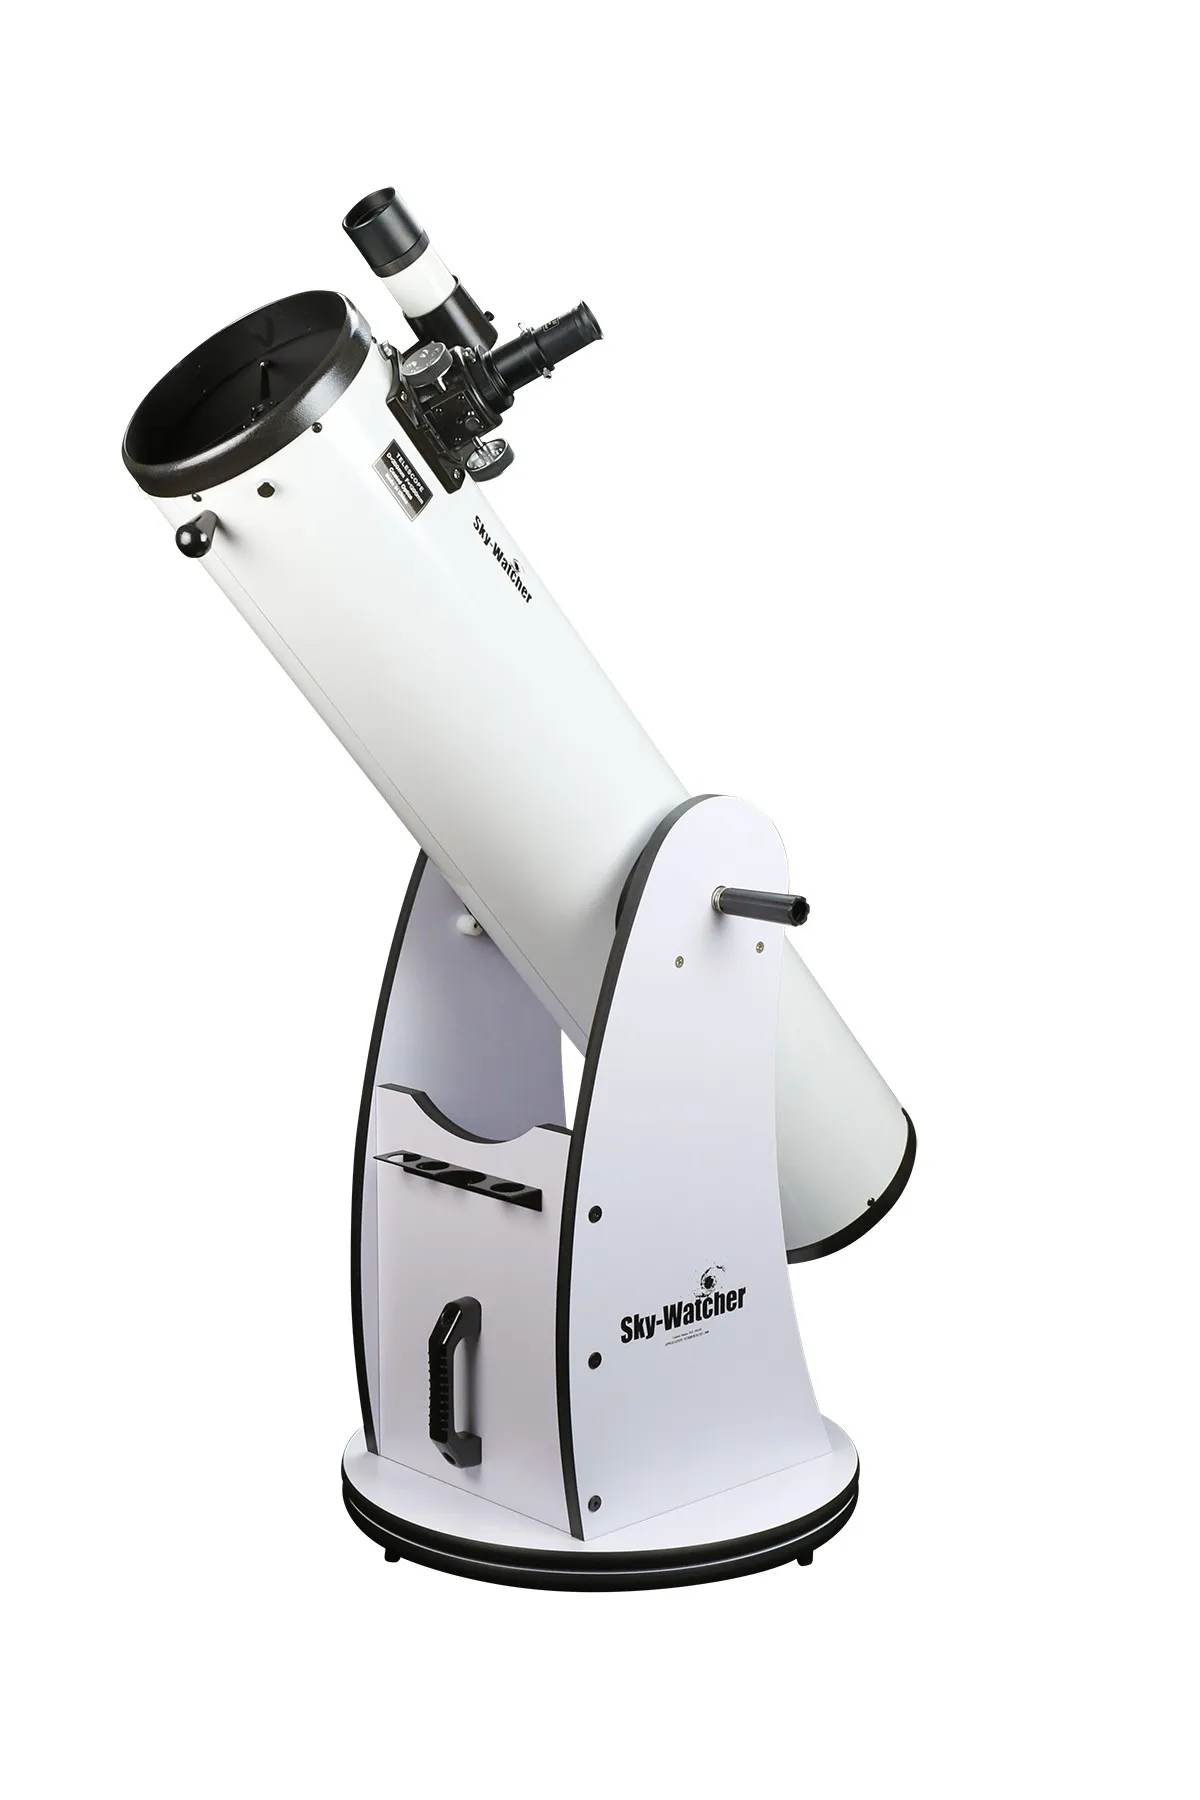 sky-watcher-8-f59-telescope-dobsonian-traditionnel-obturateur-er-promotion-sur-la-meilleure-qualite